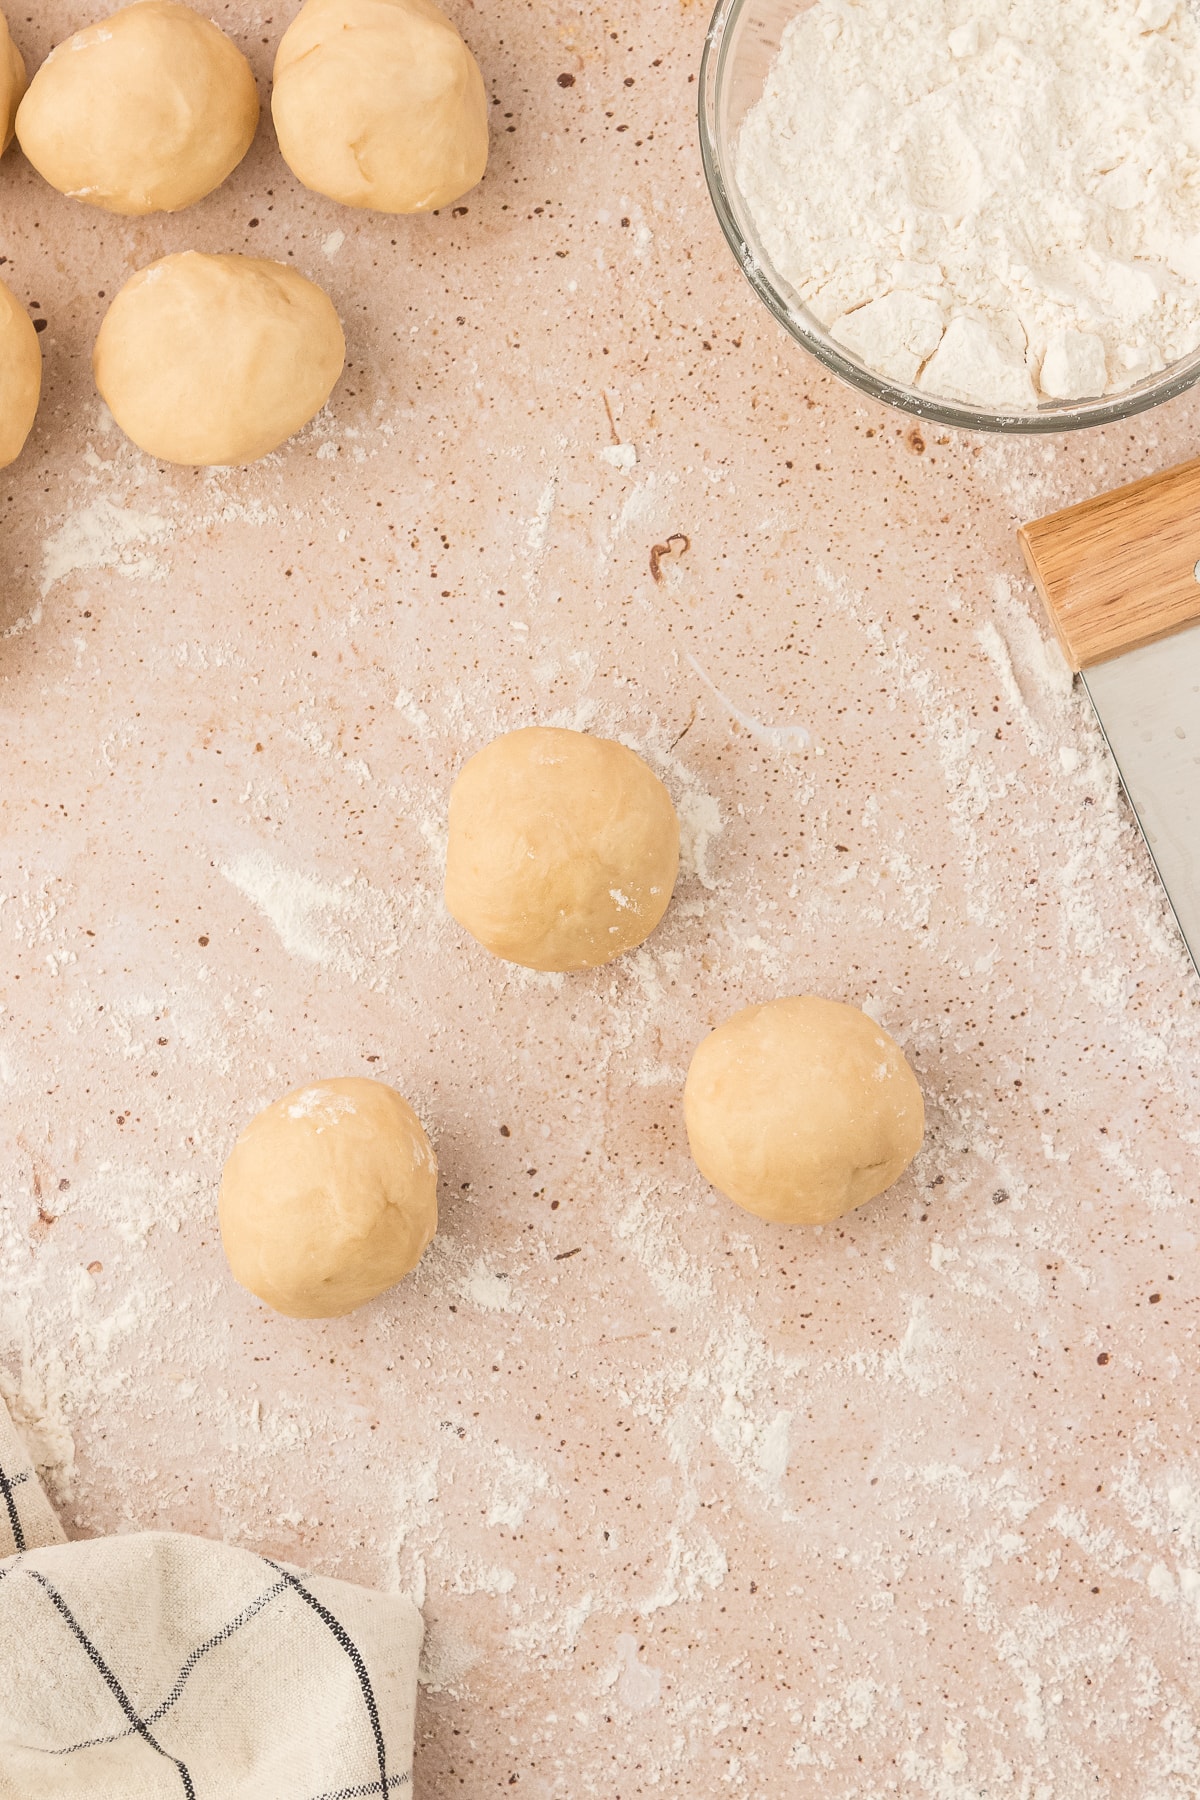 Empanada dough rolled into balls to form empanada shape